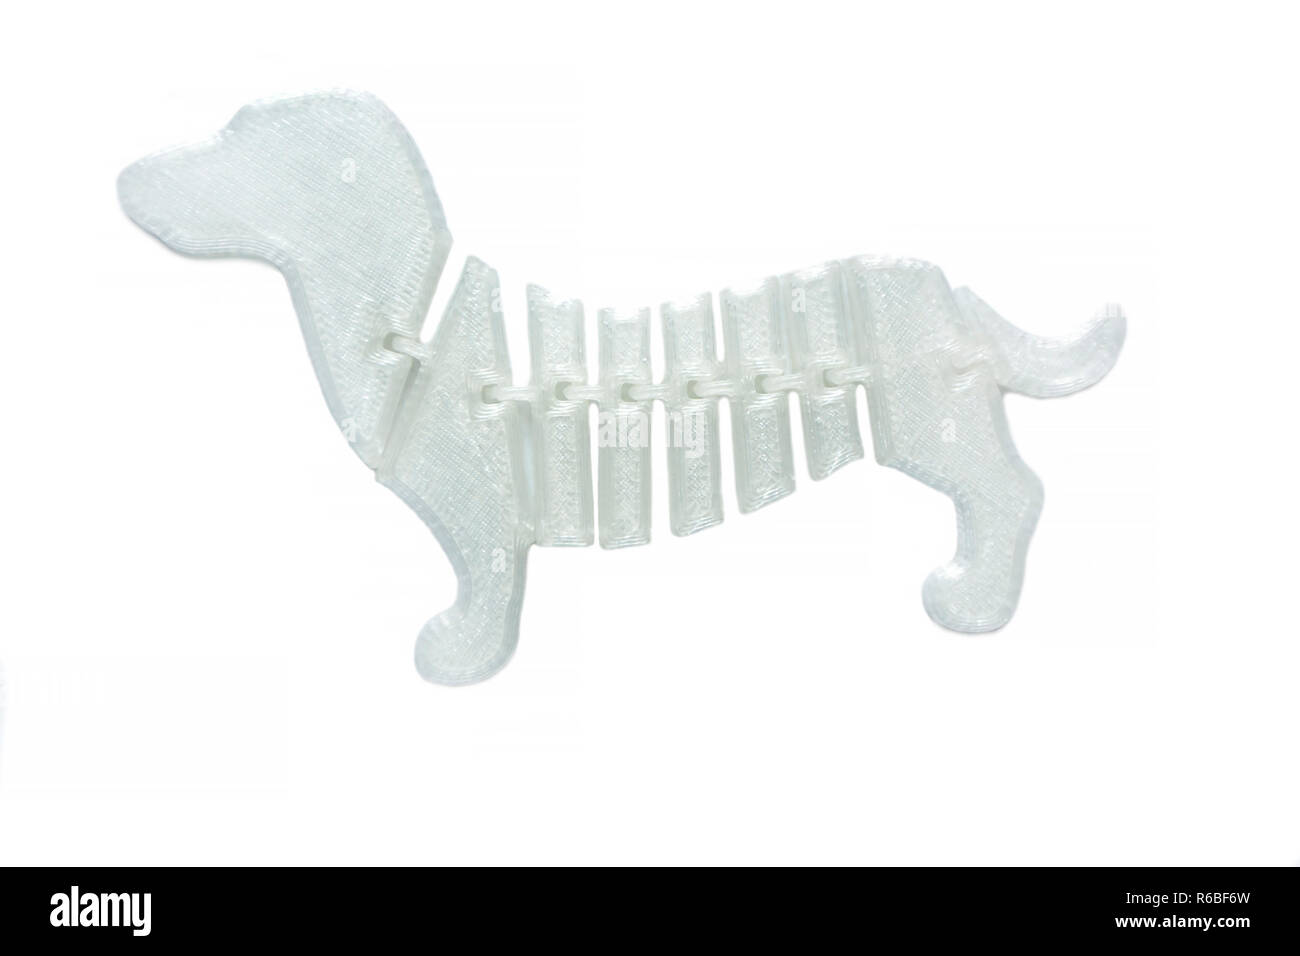 La lumière vive objet blanc en forme de jouet chien imprimé sur imprimante  3d isolé sur fond blanc. Fused deposition modeling, FDM. La technologie  moderne Concept additif progressif pour l'impression 3D Photo